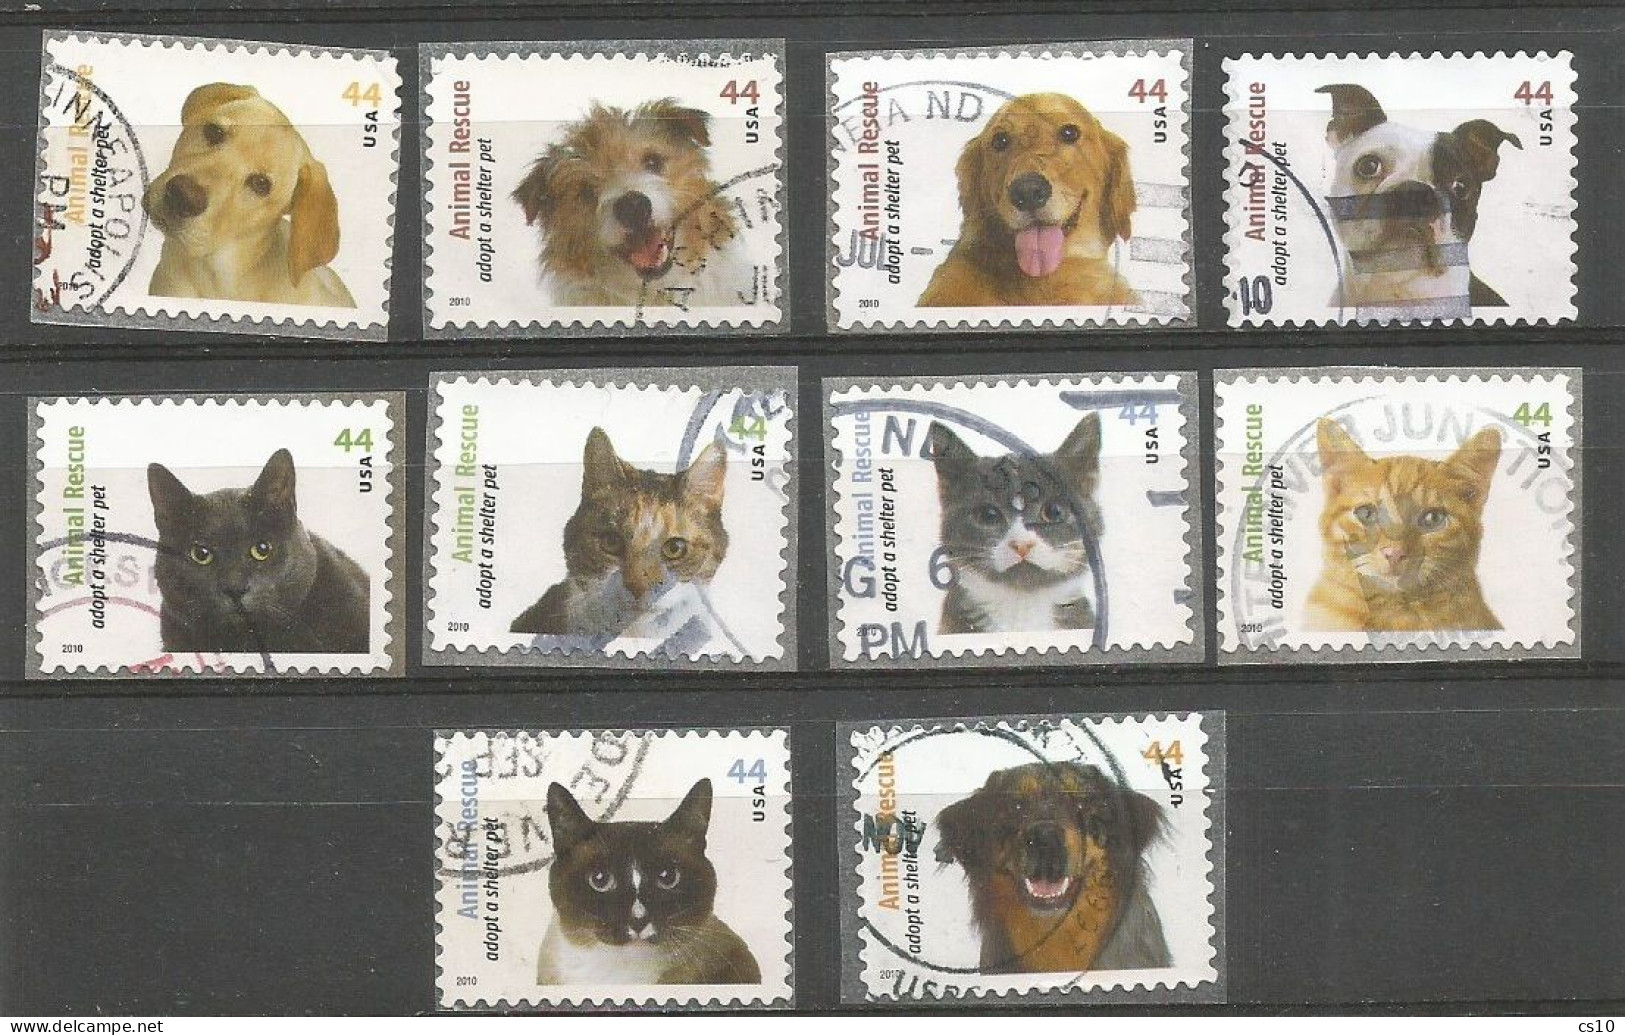 USA 2010 Animal Rescue - Adopt A Shelter Pet C.44 - Cpl 10v Set SC.#4451/60  - VFU Condition - Annate Complete